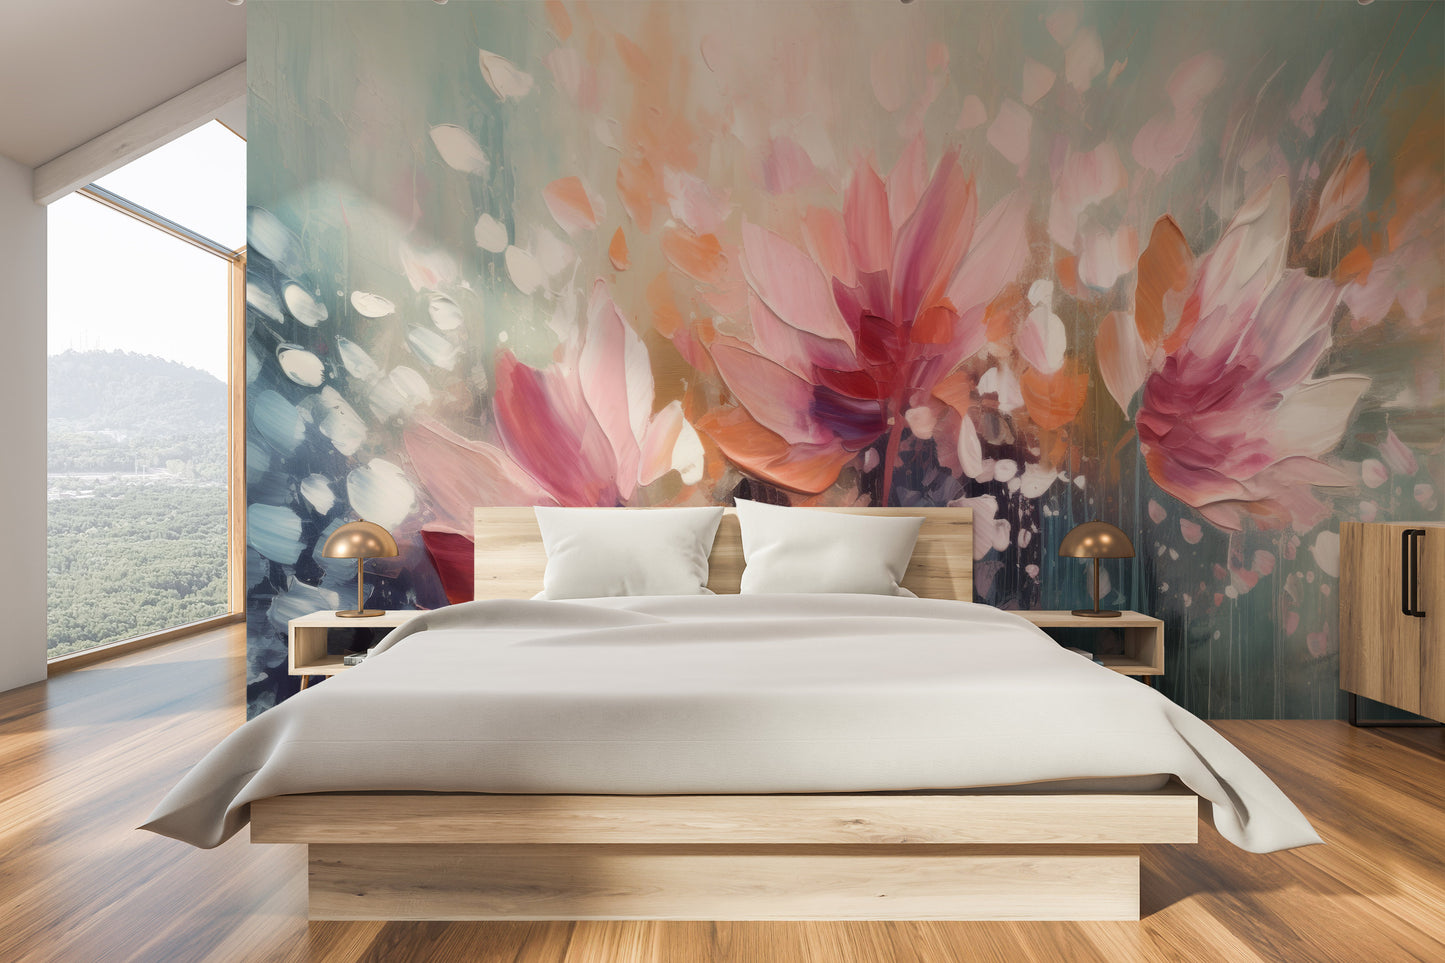 Fototapeta artystyczna o nazwie Dreamy Floral Abstraction pokazana w aranżacji wnętrza.